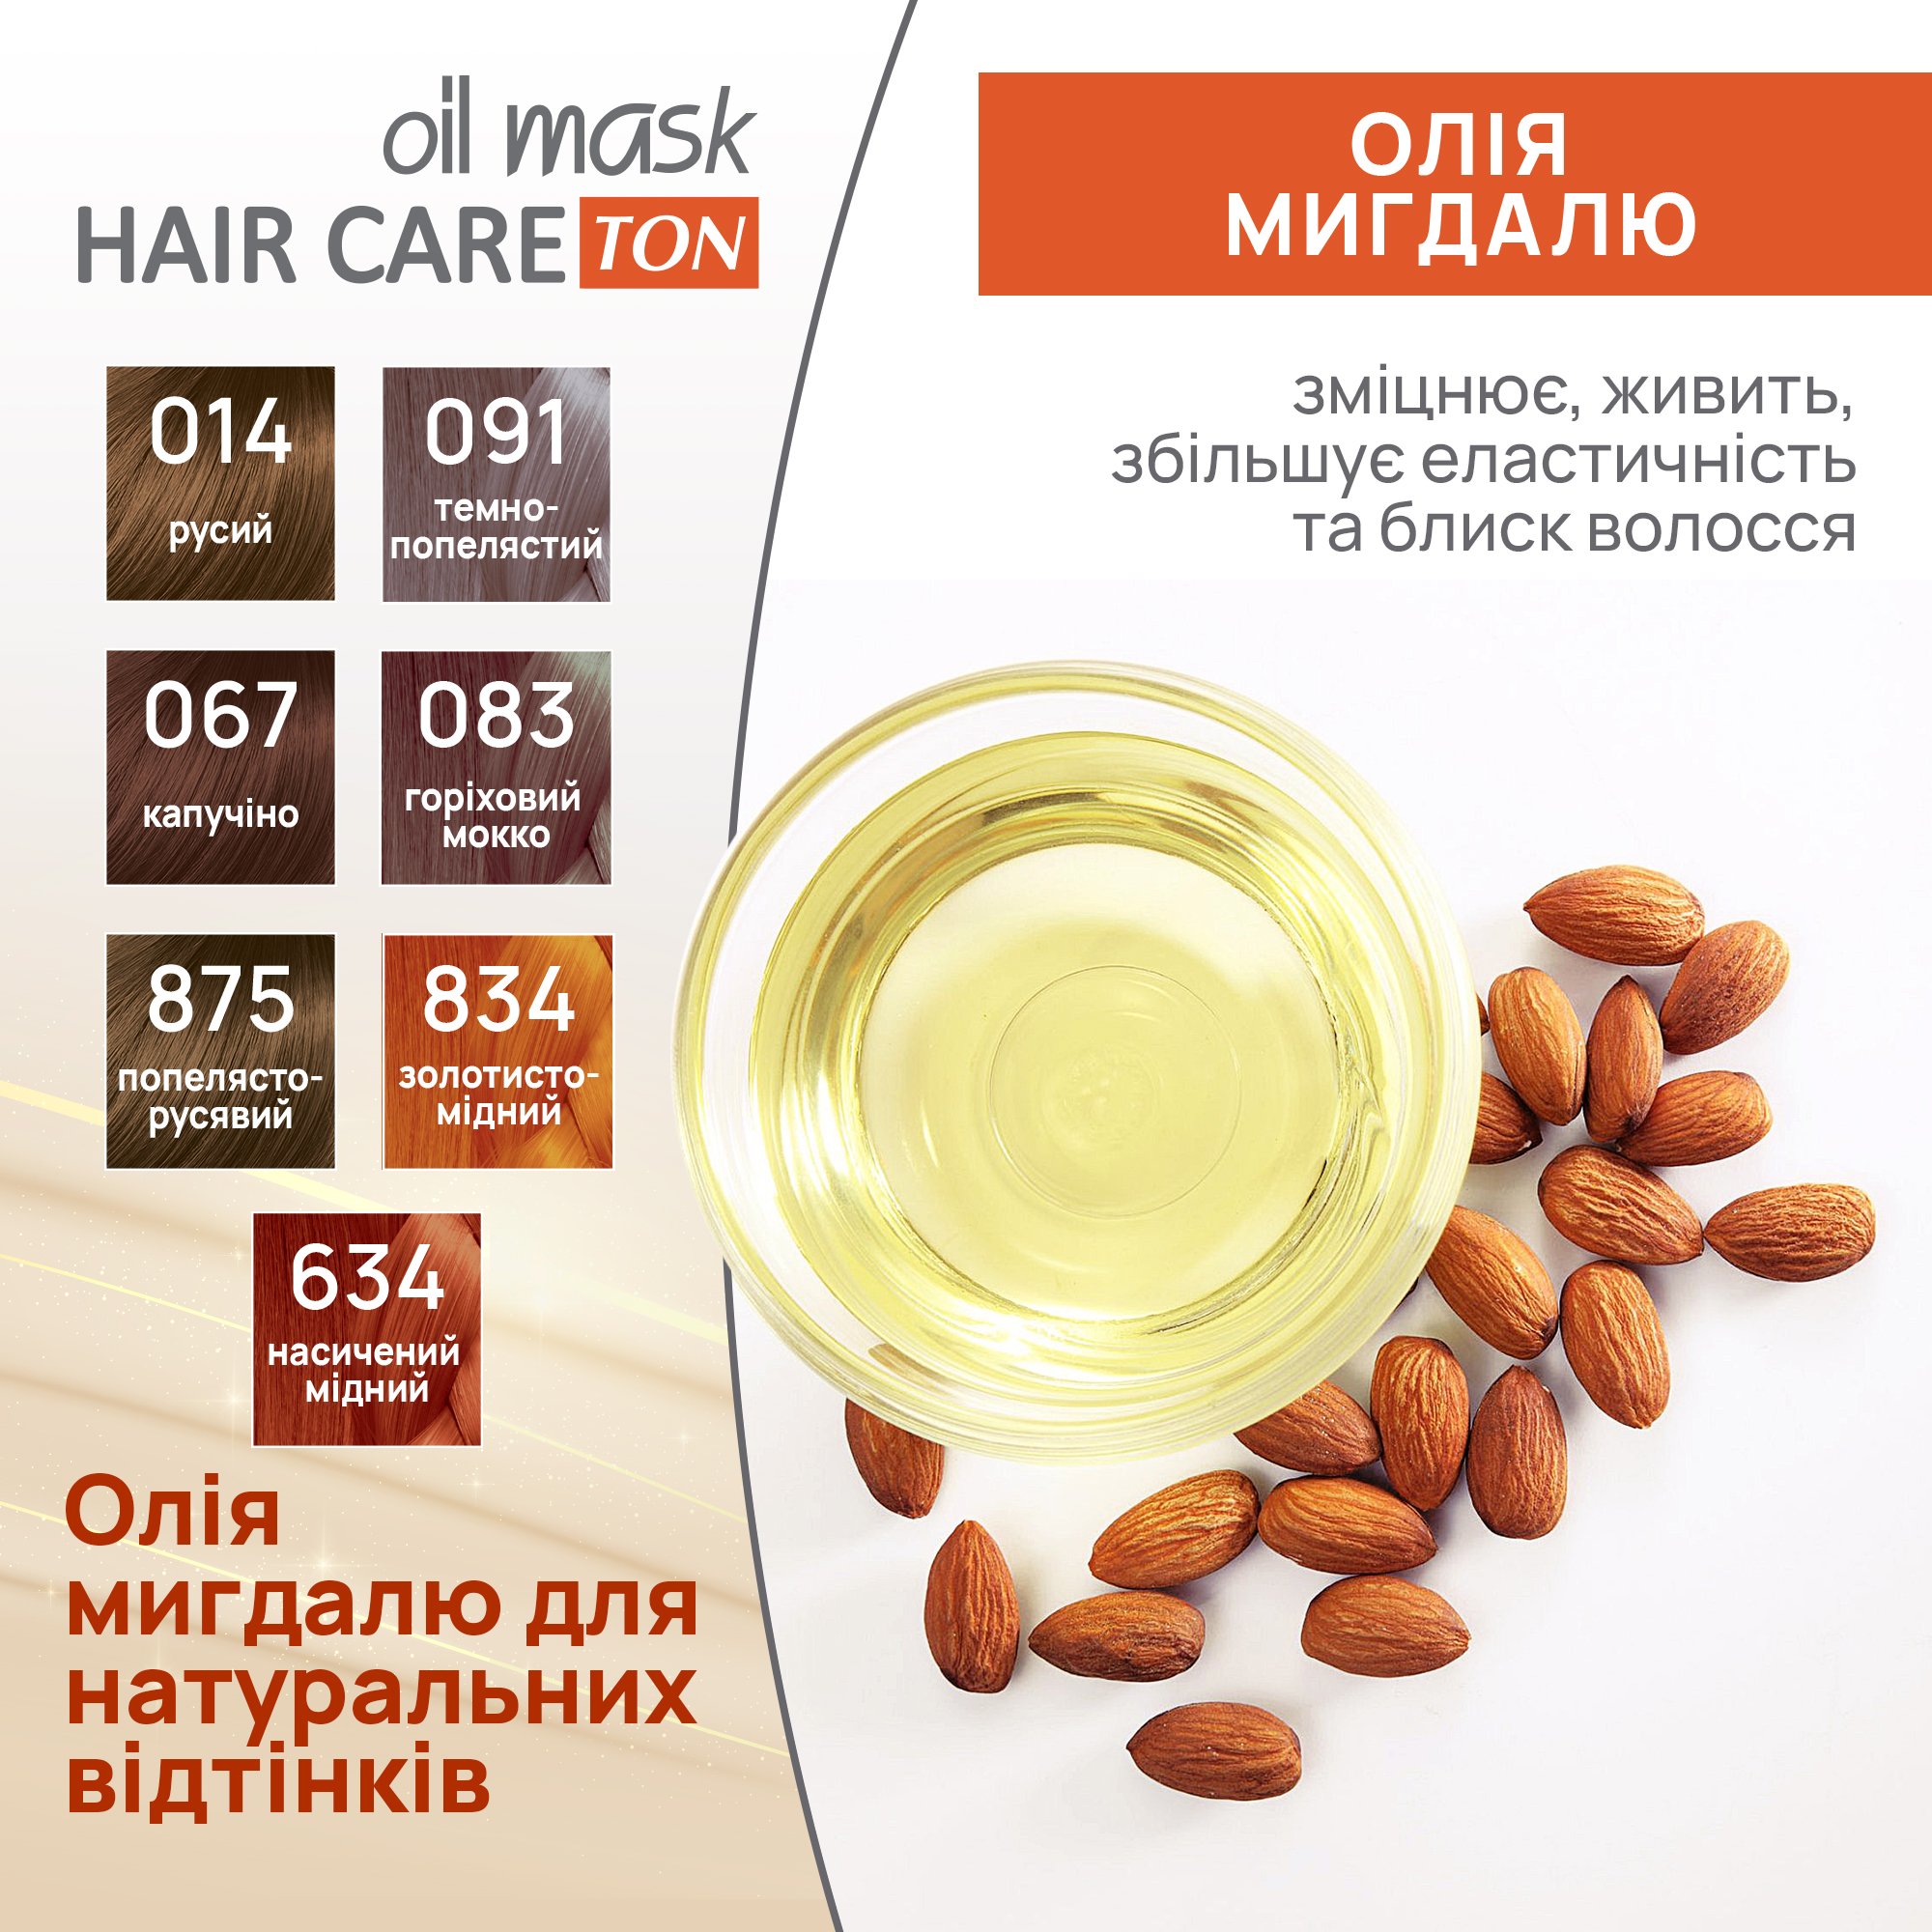 Тонуюча маска для волосся Acme Color Hair Care Ton oil mask, відтінок 083, горіховий мокко, 30 мл - фото 6